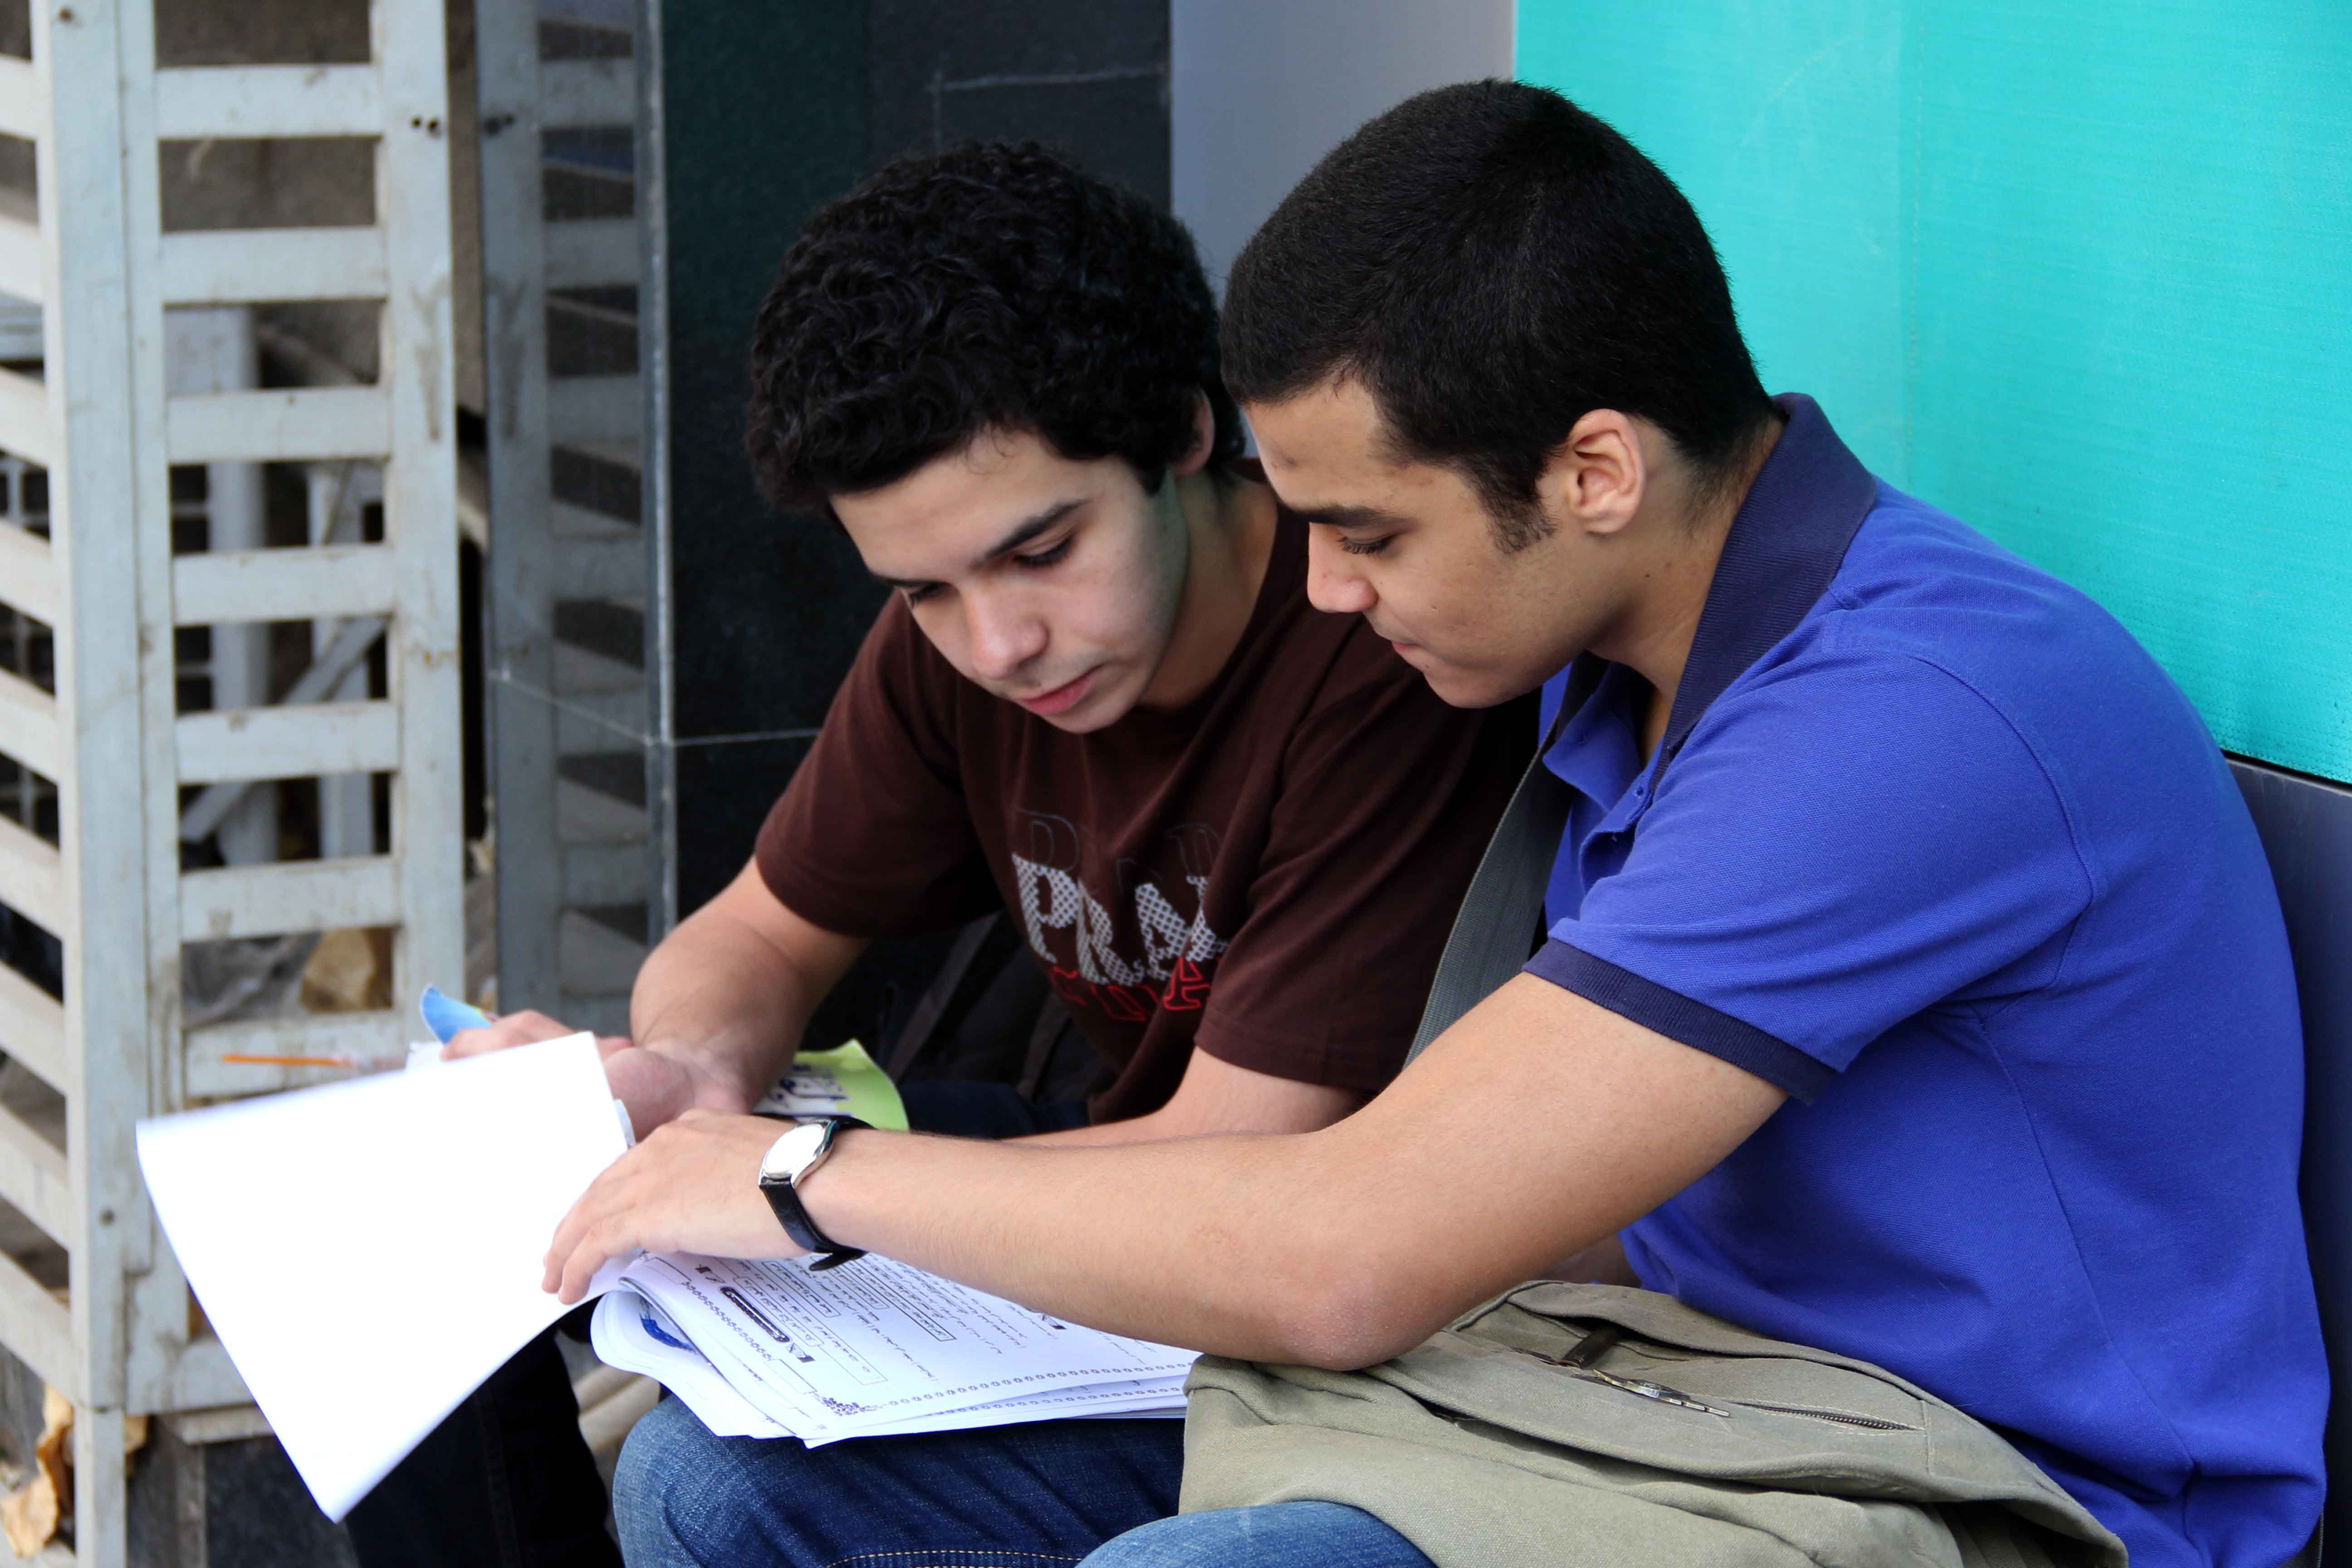 بدء امتحانات الثانويه العامه 8-6-2013 تصوير حسن محمد‎ (5)